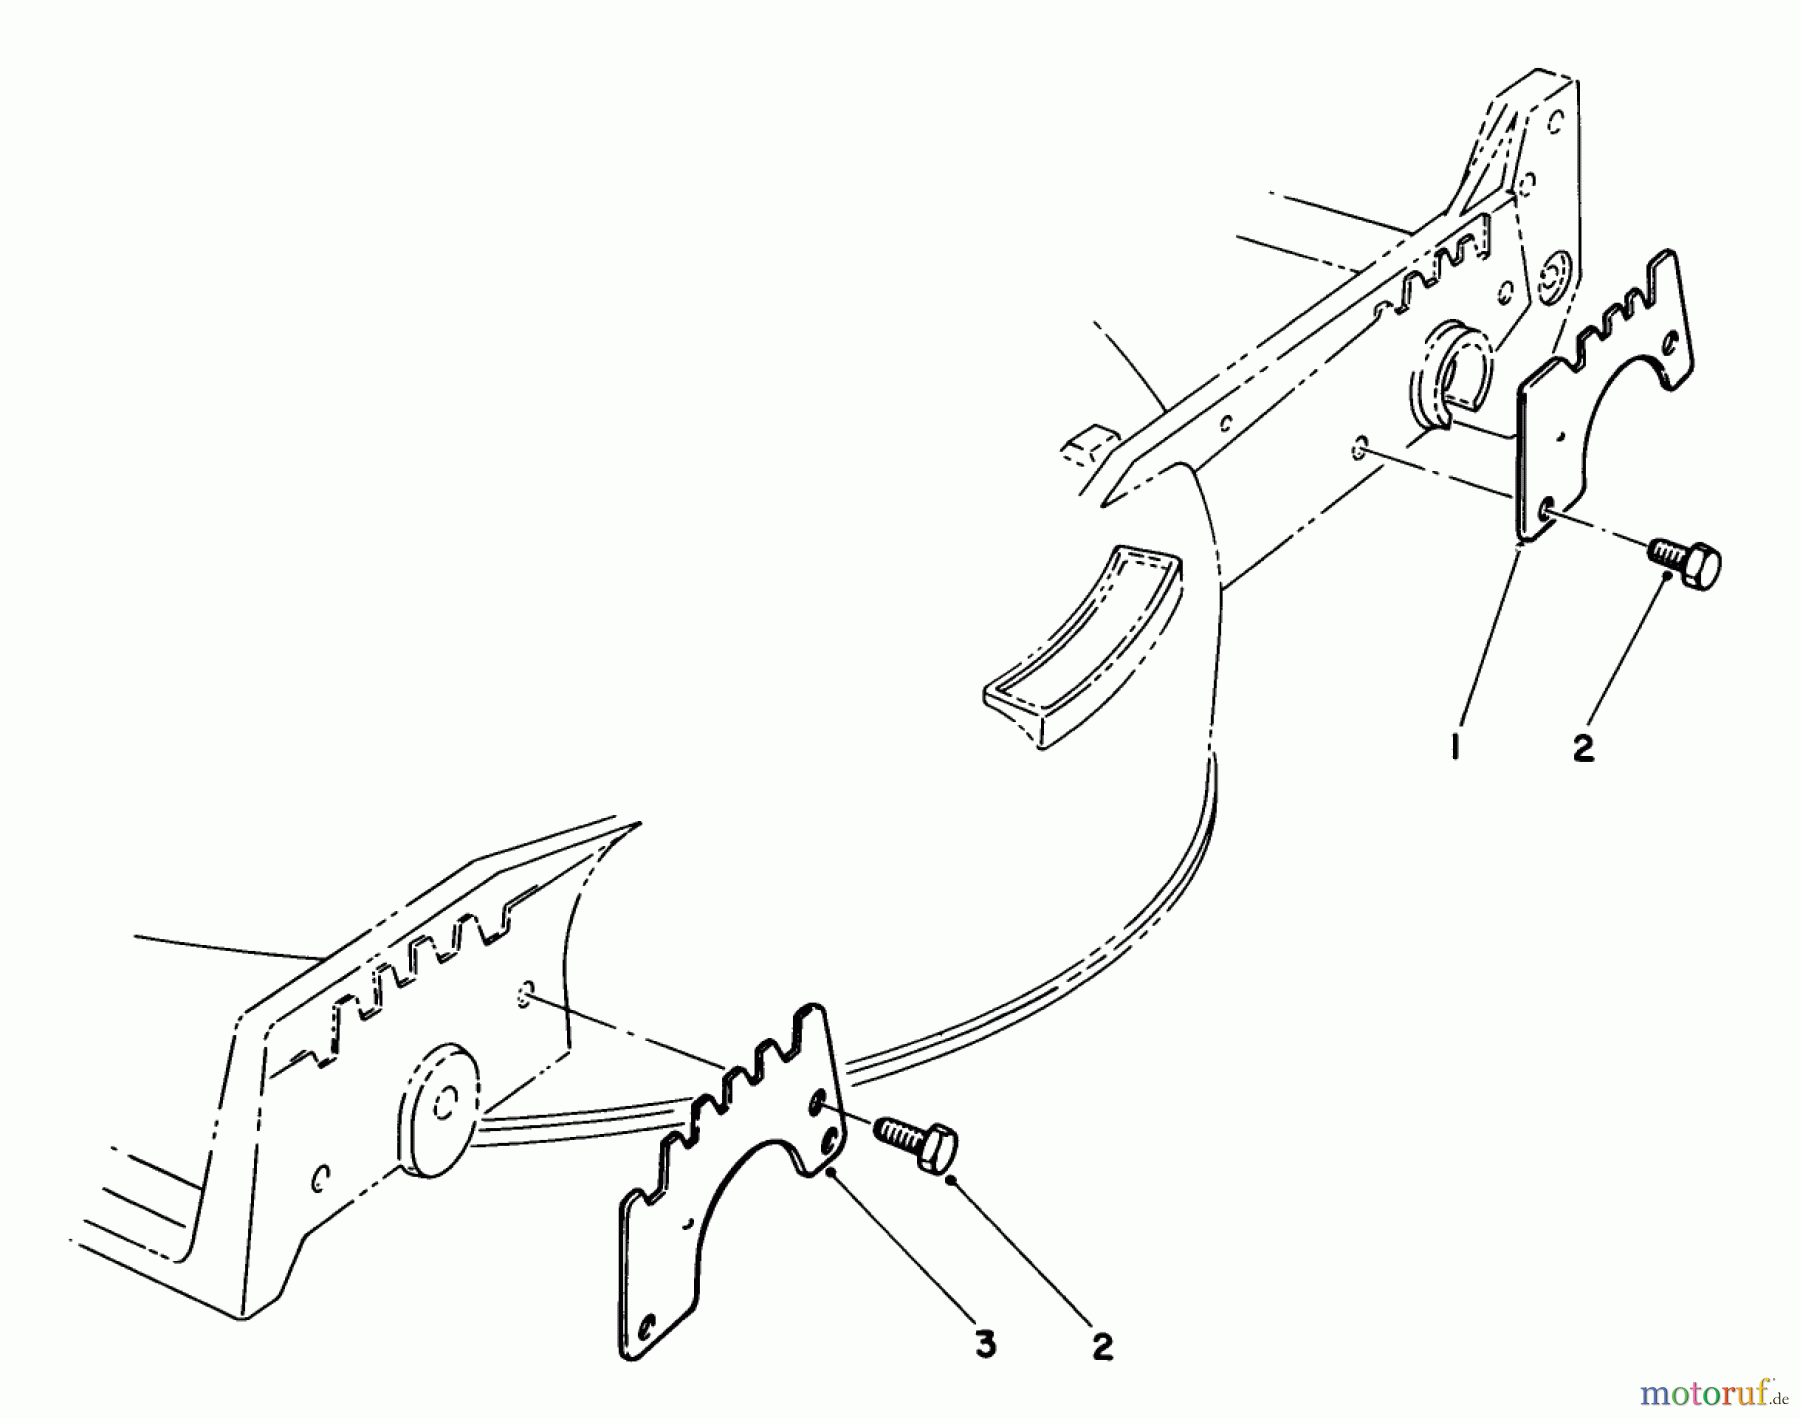  Toro Neu Mowers, Walk-Behind Seite 1 20680 - Toro Lawnmower, 1985 (5000001-5999999) WEAR PLATE KIT NO. 49-4080 (OPTIONAL)